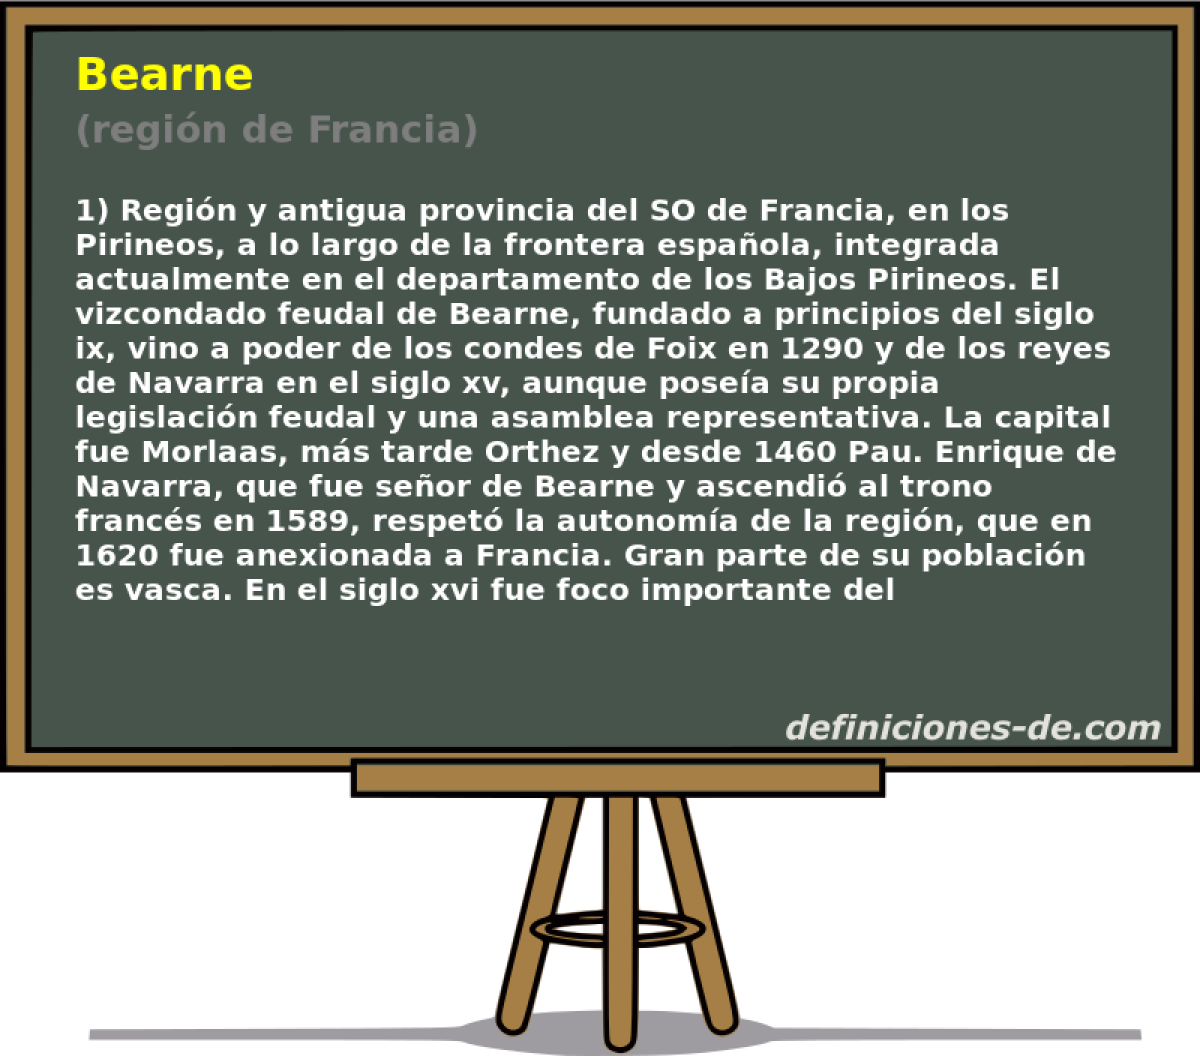 Bearne (regin de Francia)